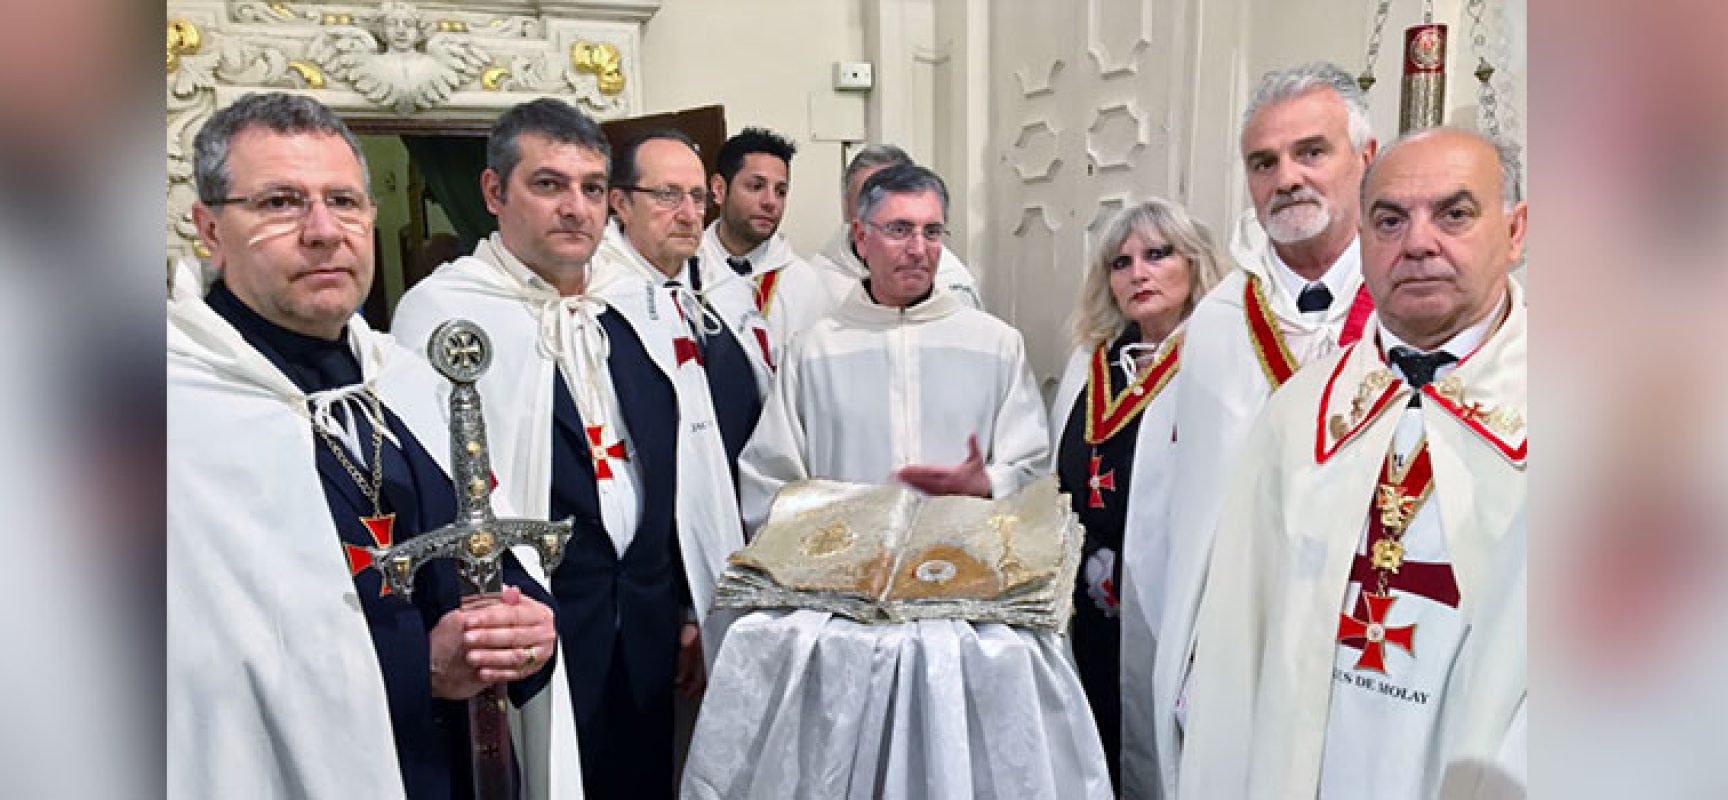 A Bisceglie l’incontro Storico culturale “Sulle Tracce dei Templari in Puglia”